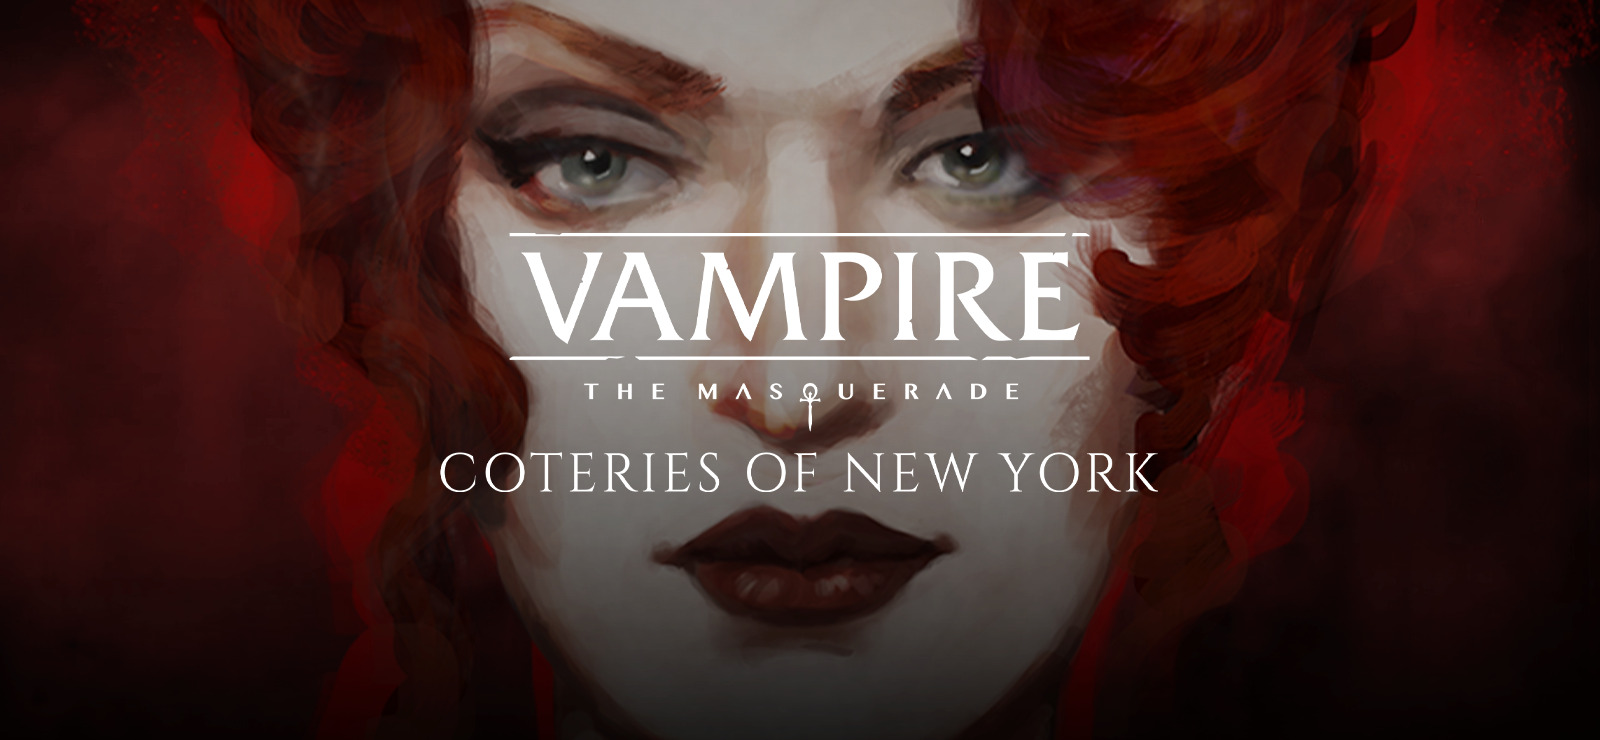 Vampire: The Masquerade - Coteries Of New York Original Soundtrack